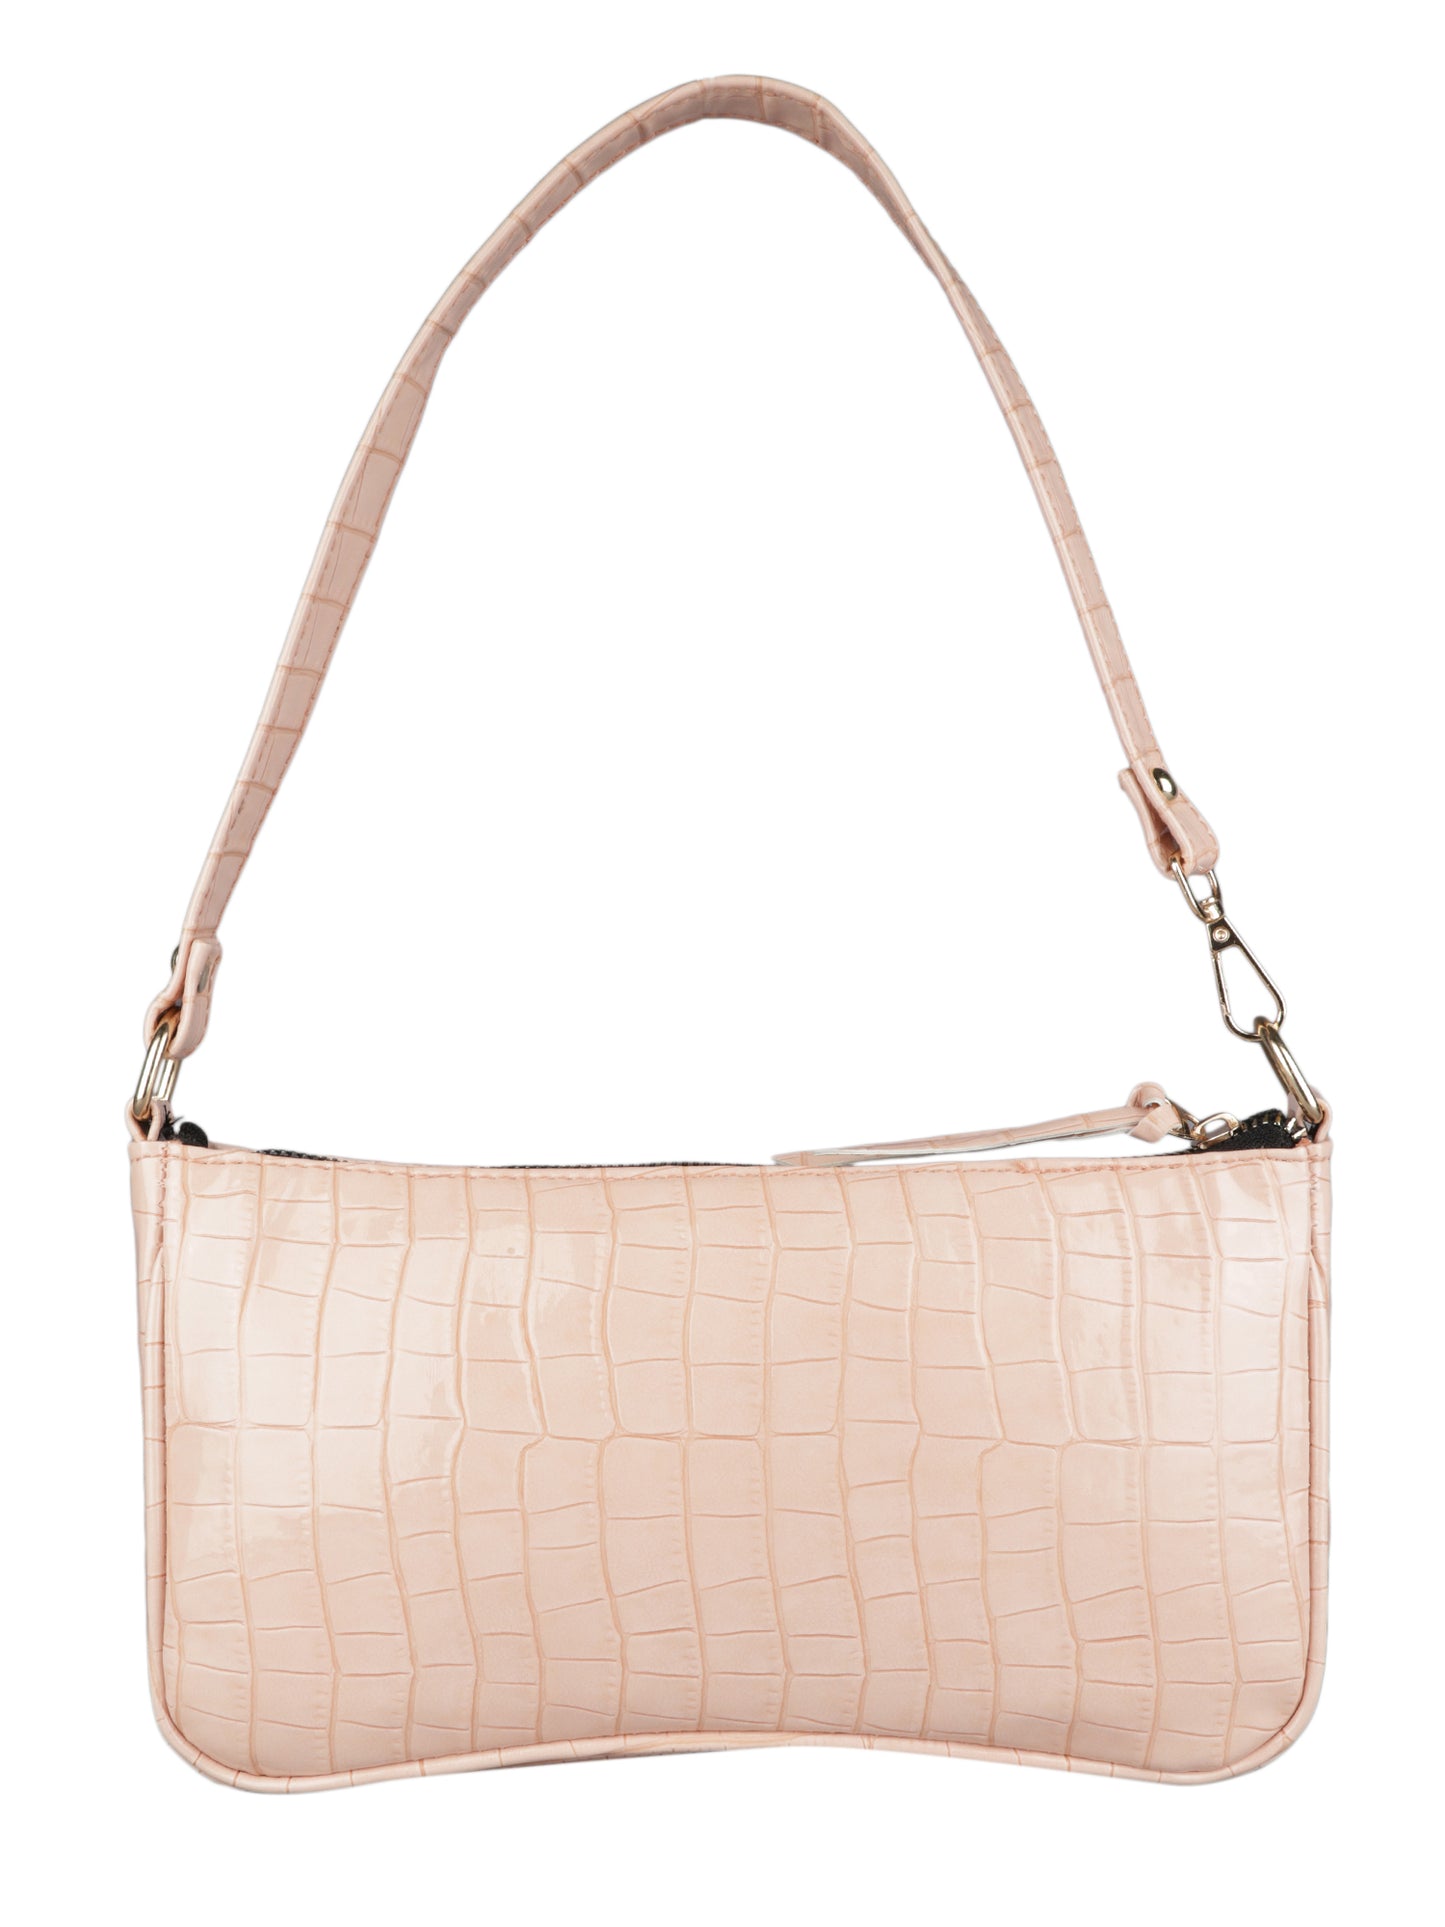 MINI WESST Women's Pink Handbags(MWSB007PK)